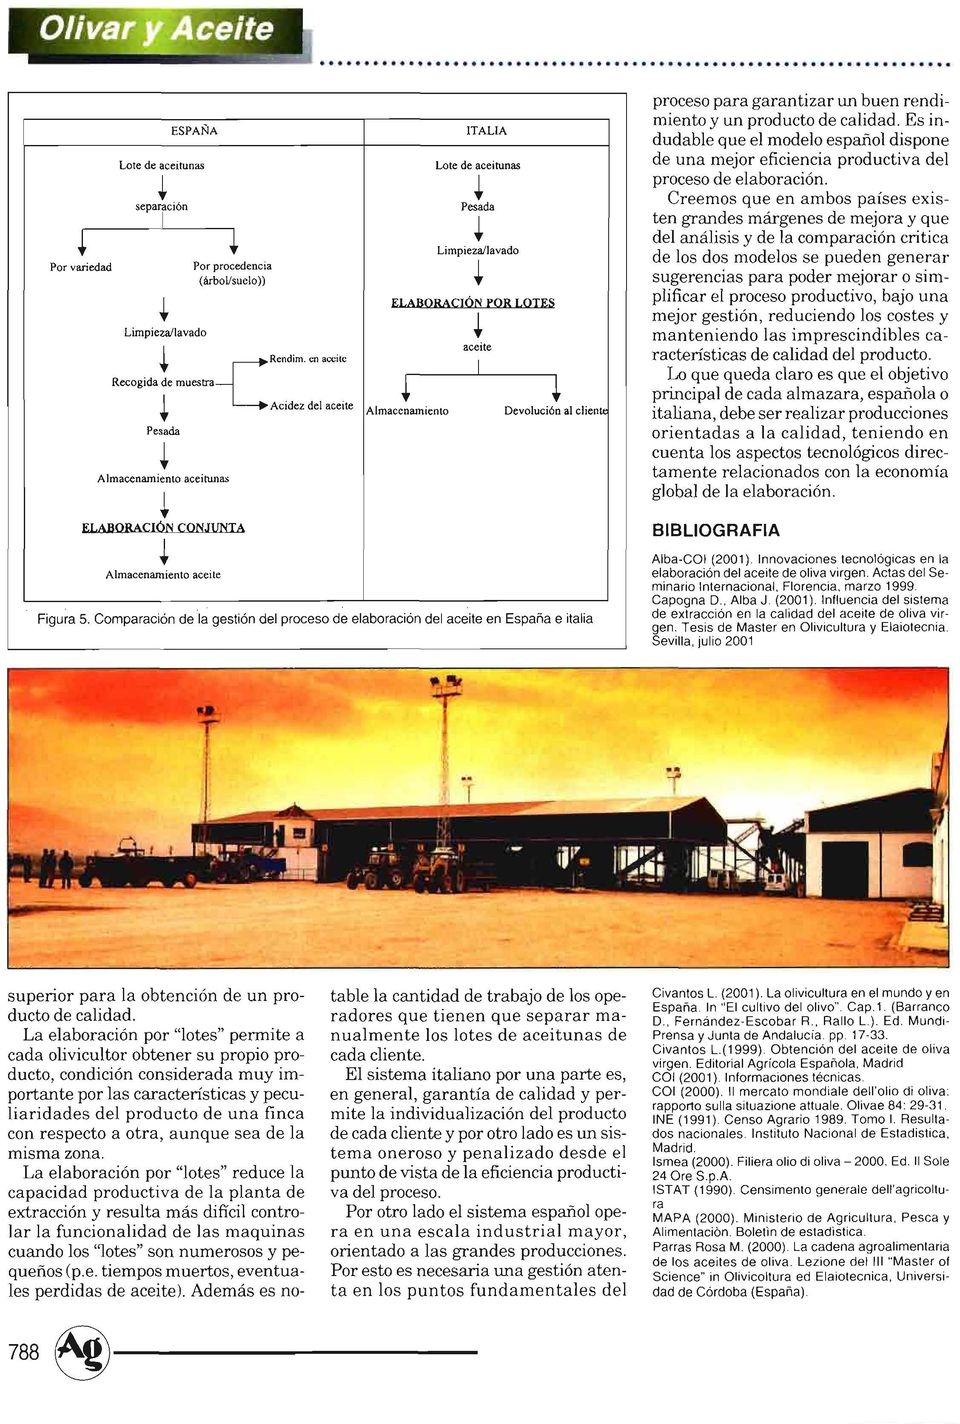 Comparación de la gestión del proceso de elaboración del aceite en España e italia proceso para garantizar n ben rendimiento y n prodcto de calidad.